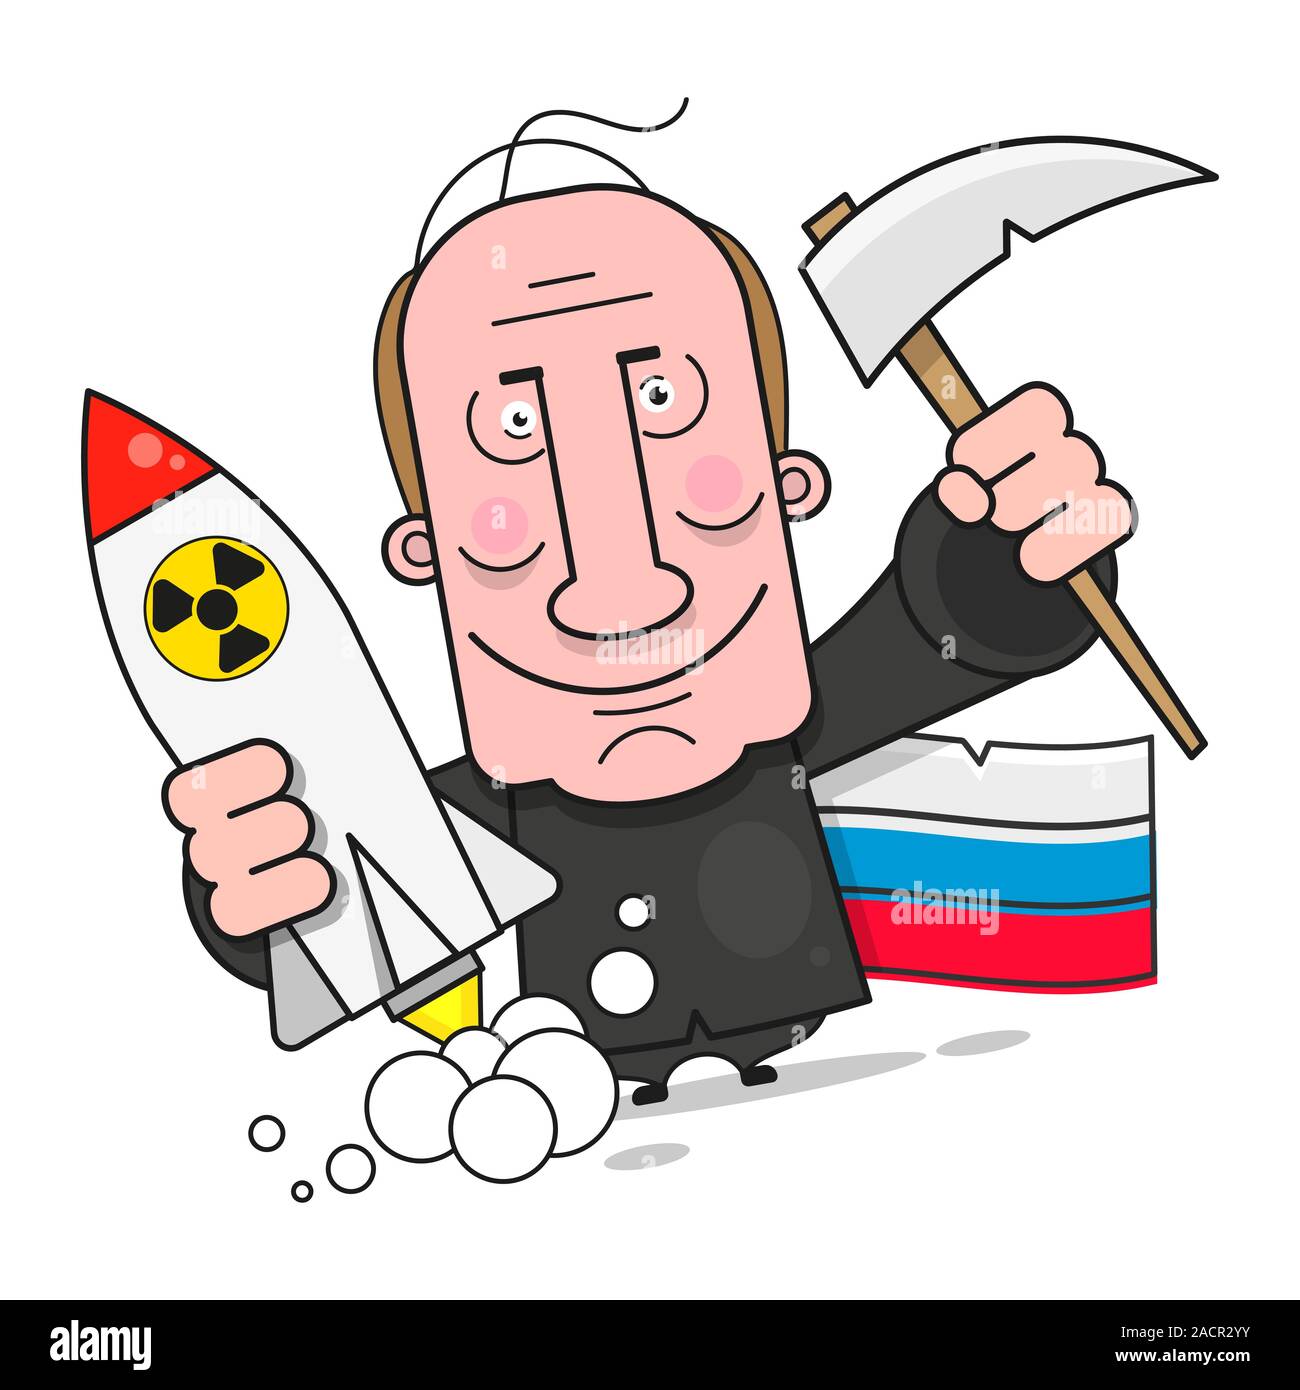 Putin, ein tolles Design für jeden Zweck. Russische Fahne Vektor. Darstellung der russischen Flagge. Krise in Russland. Sanktionen. Vektor Cartoon Cartoon. Krieg Stock Vektor